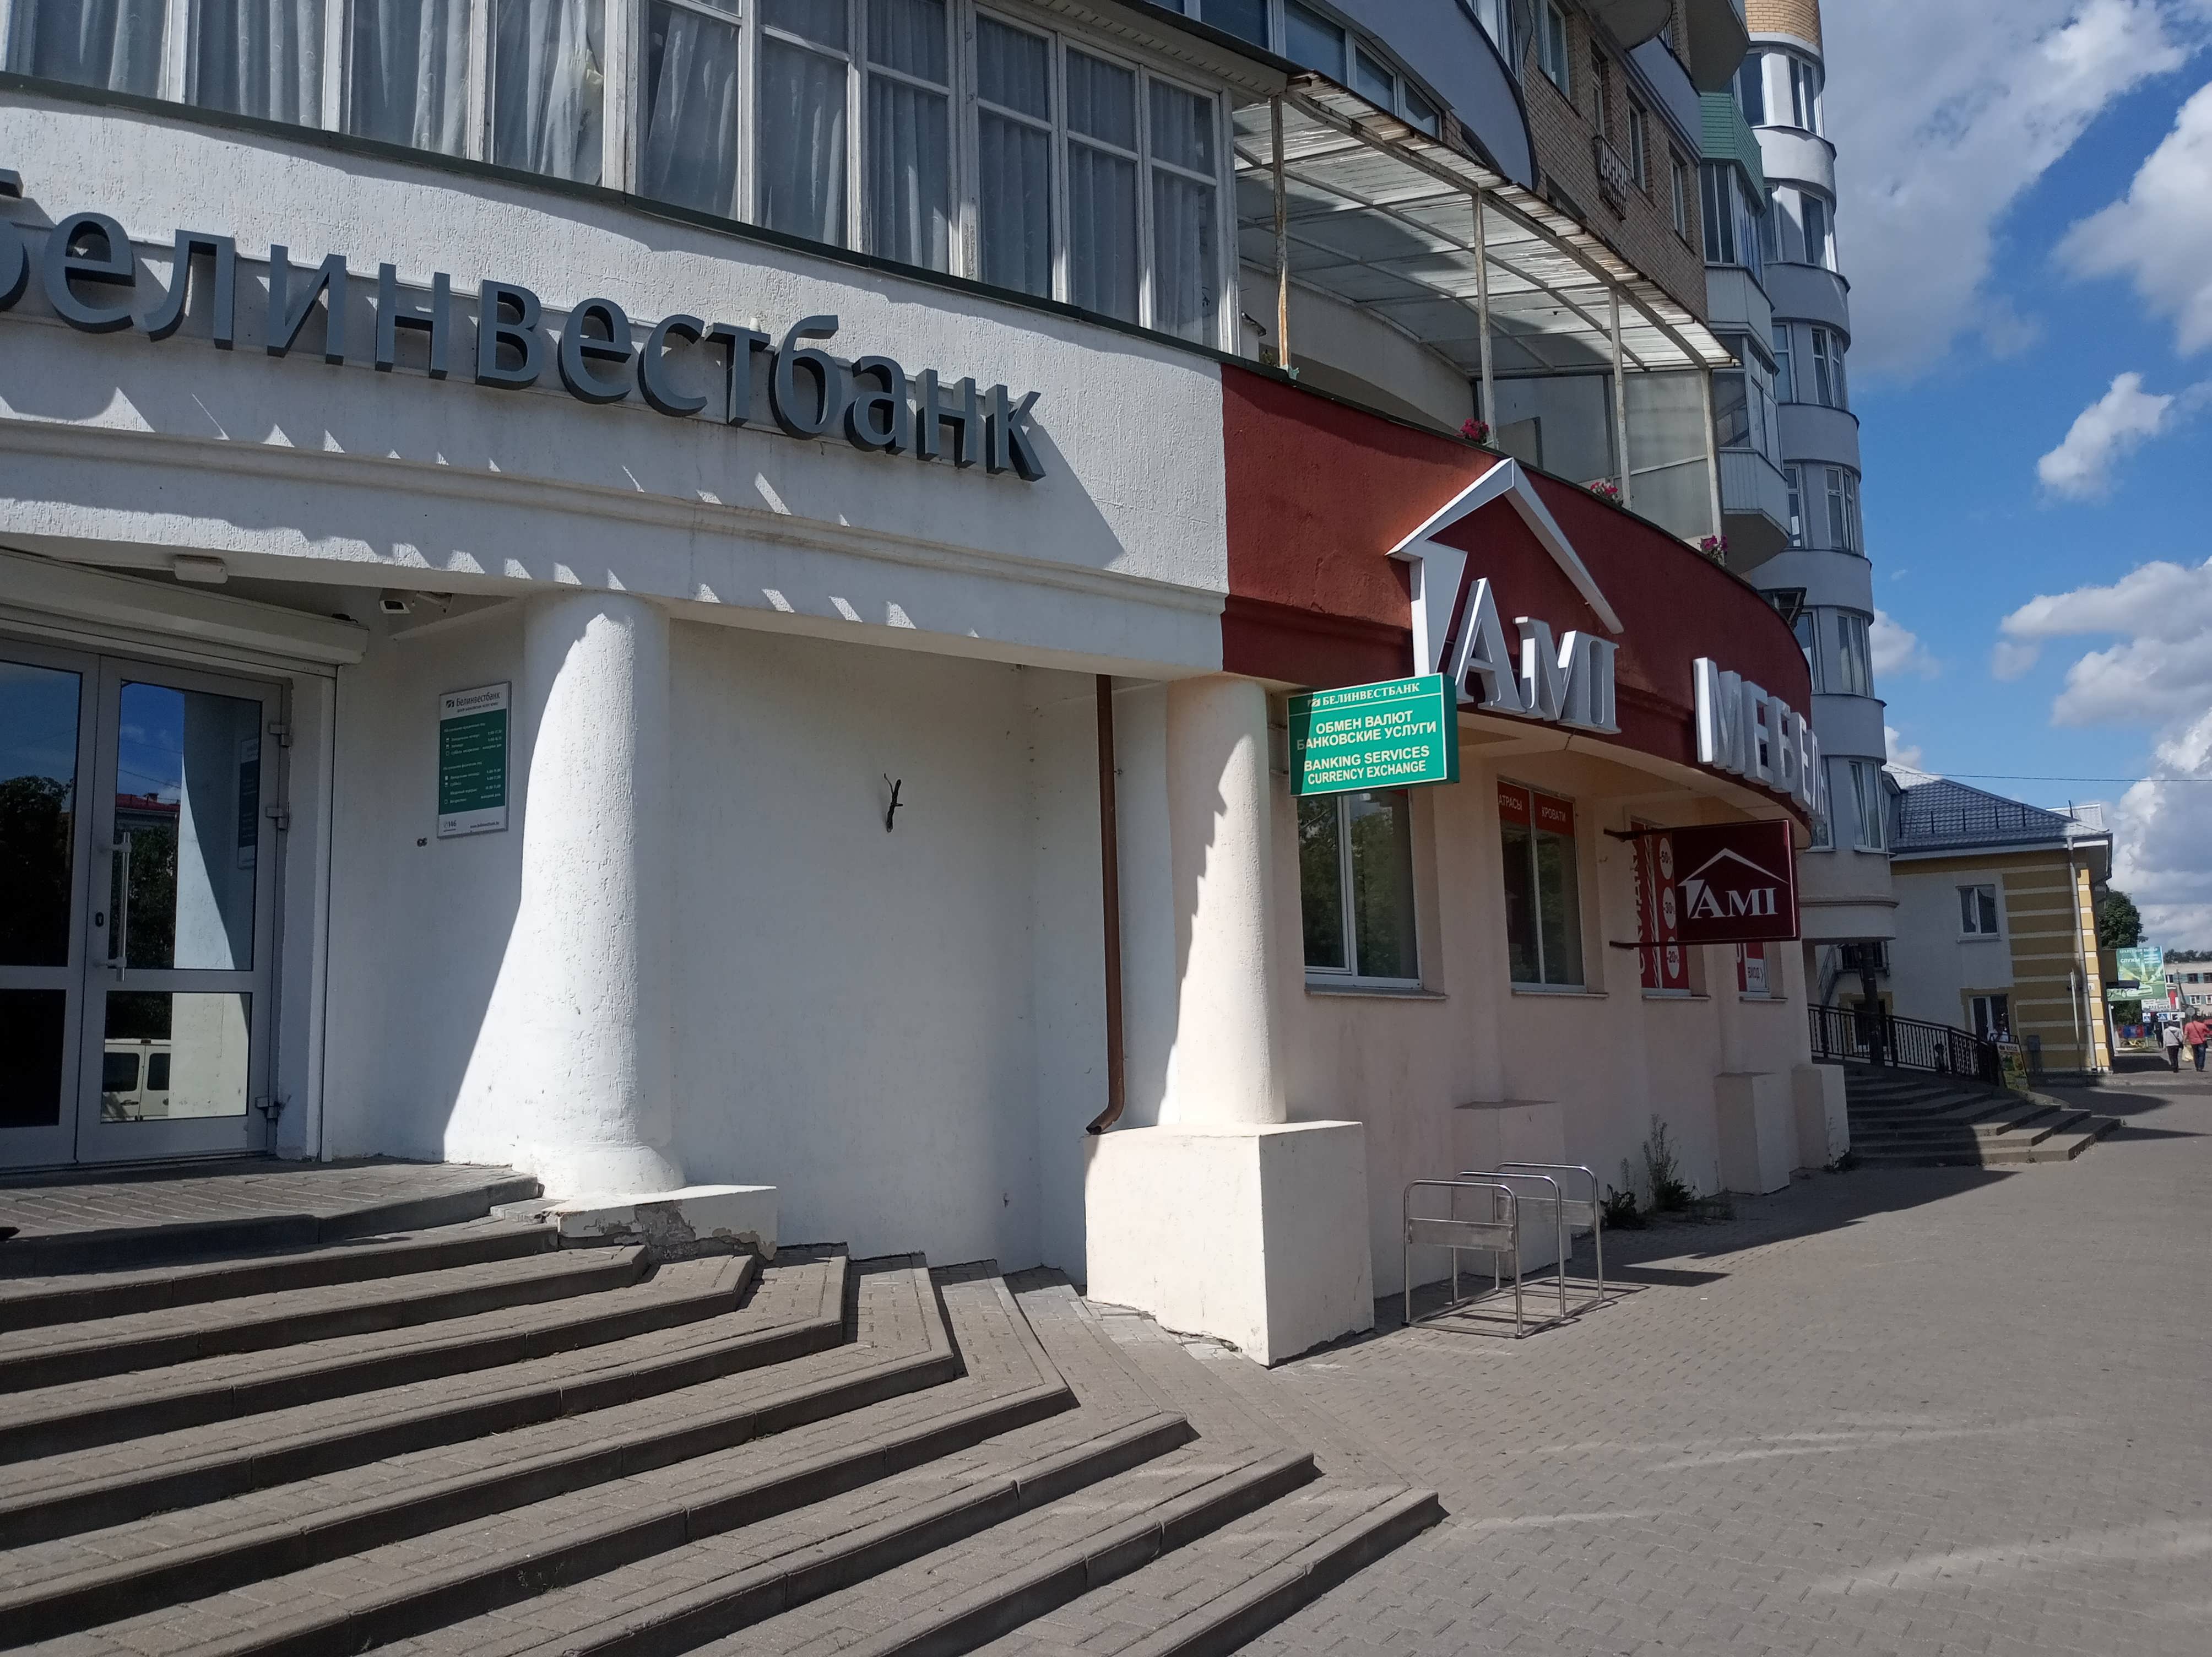 Торговое помещение 409м² в центре города по адресу г.Барановичи, ул.Димитрова, 15-72. Фасад. Со стороны Банка